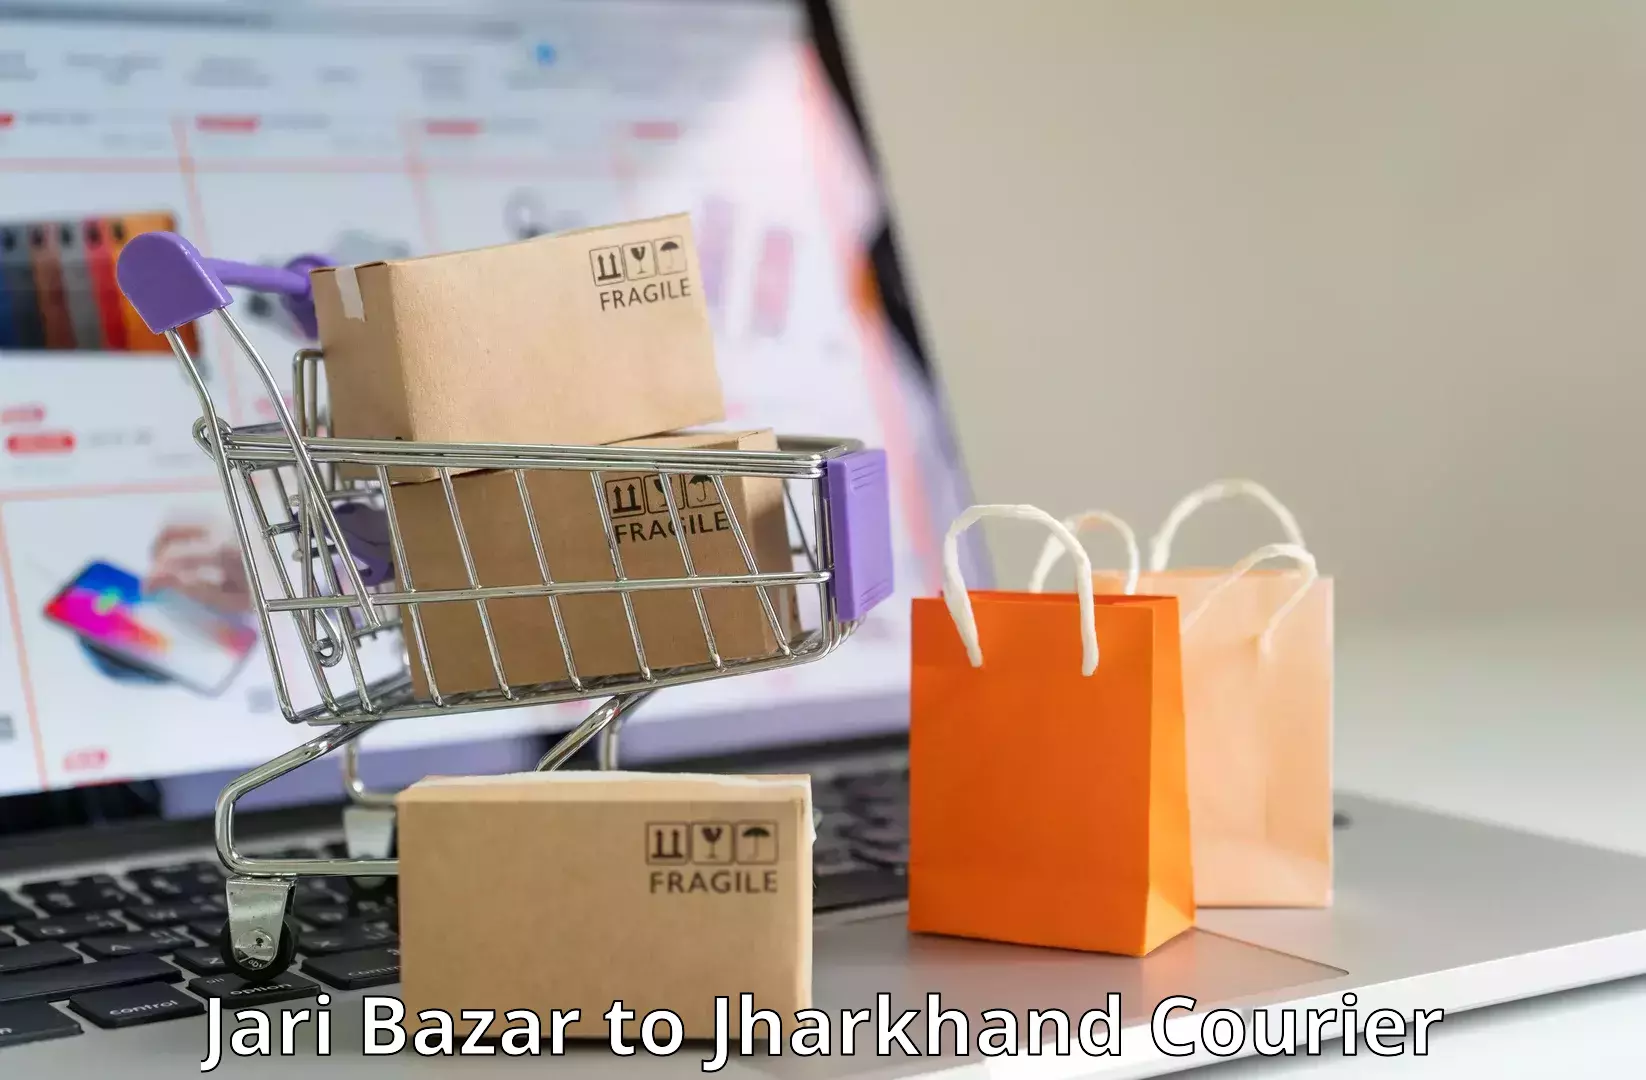 Urban courier service Jari Bazar to Chandil